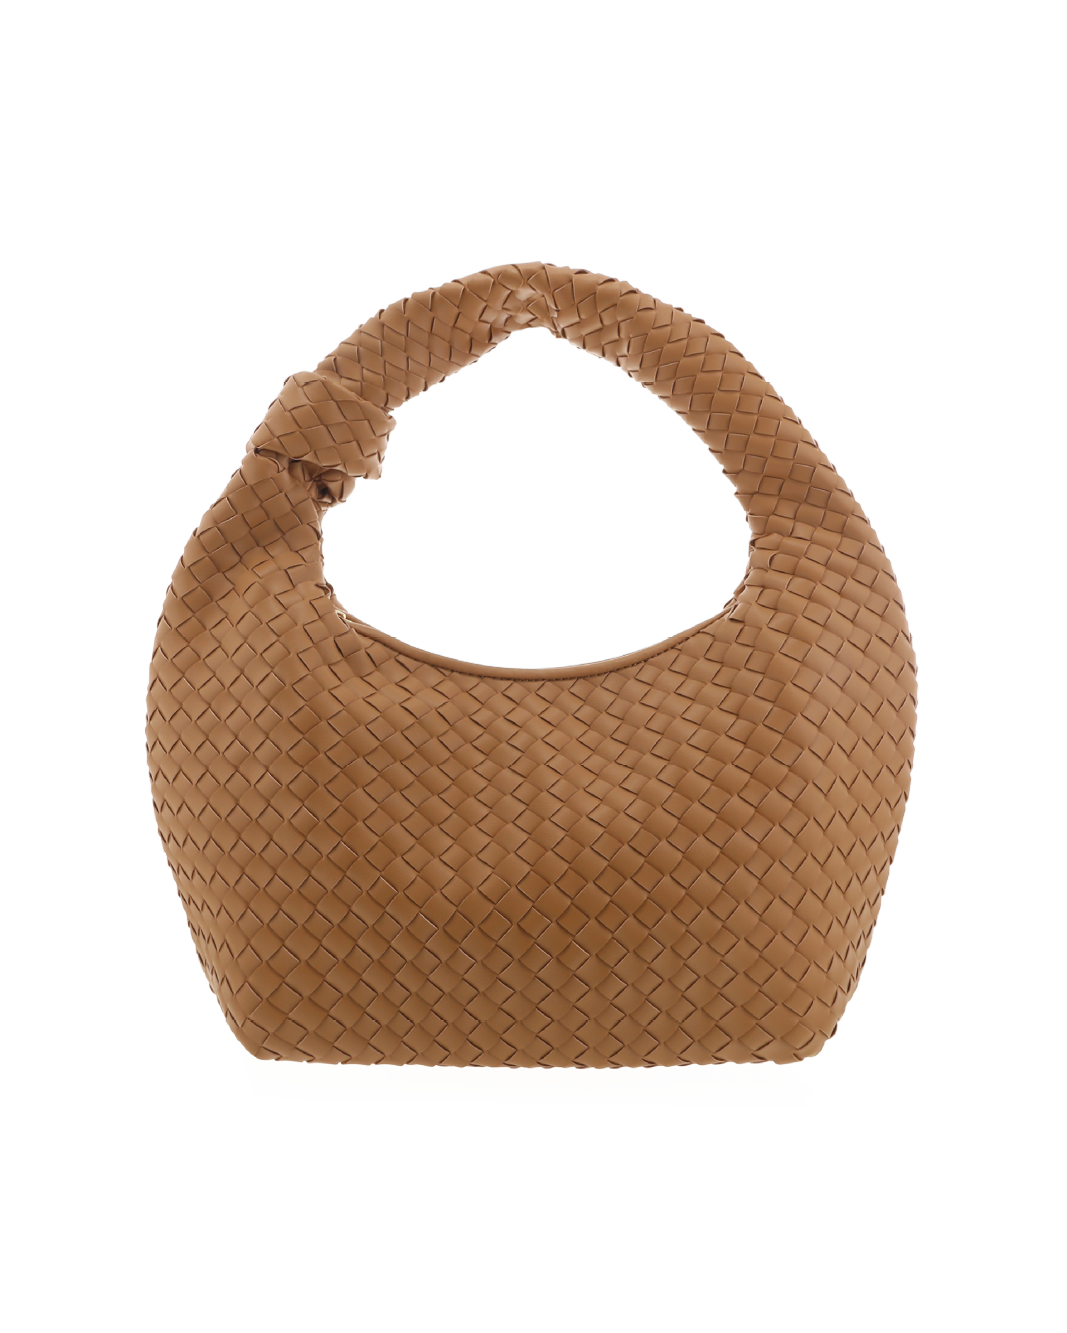 KENYA SHOULDER BAG - DESERT-Handbags-Billini--Billini